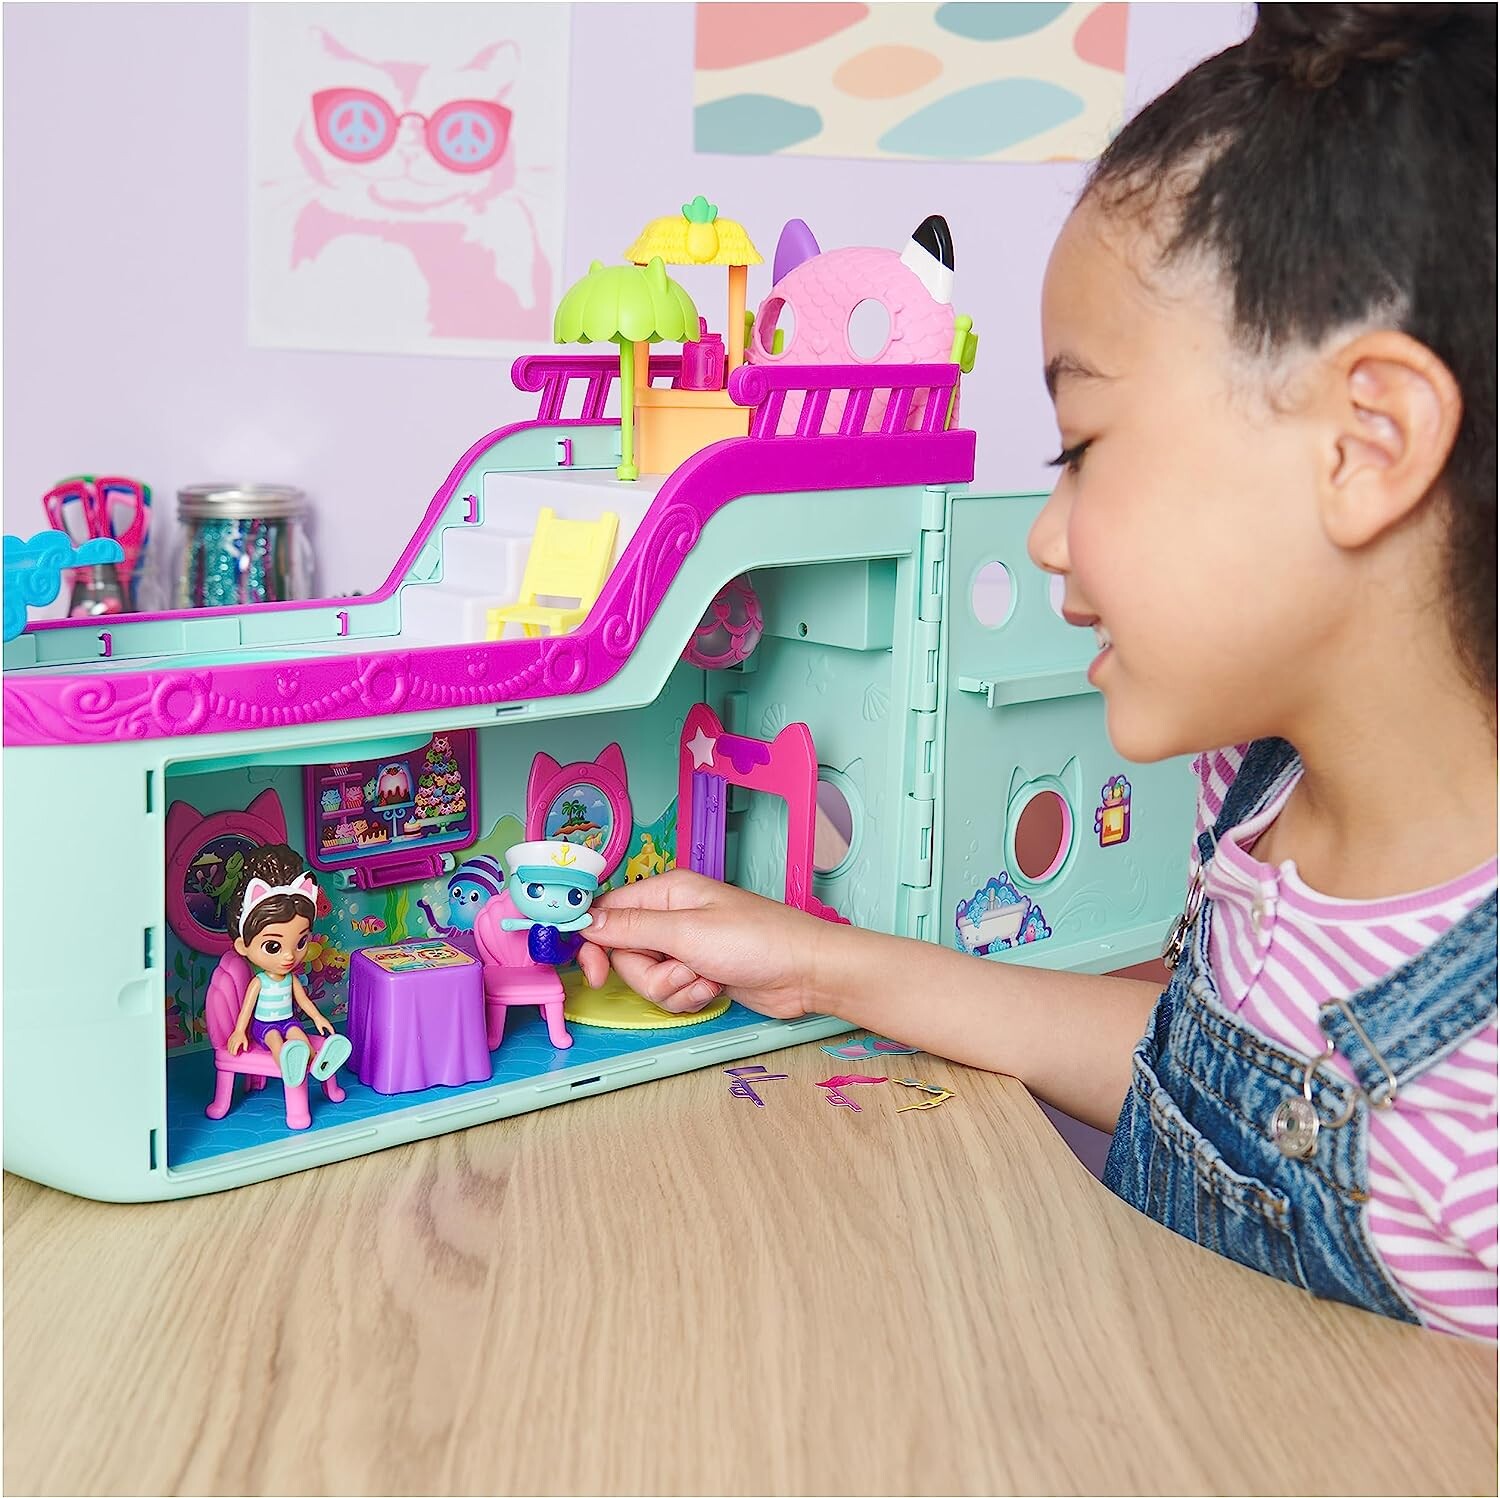 Gabby's dollhouse, la nave da crociera di gabby, con 2 personaggi, giocattoli a sorpresa e accessori per la casa delle bambole, giocattoli per bambine e bambini dai 3 anni in su - GABBY'S DOLLHOUSE